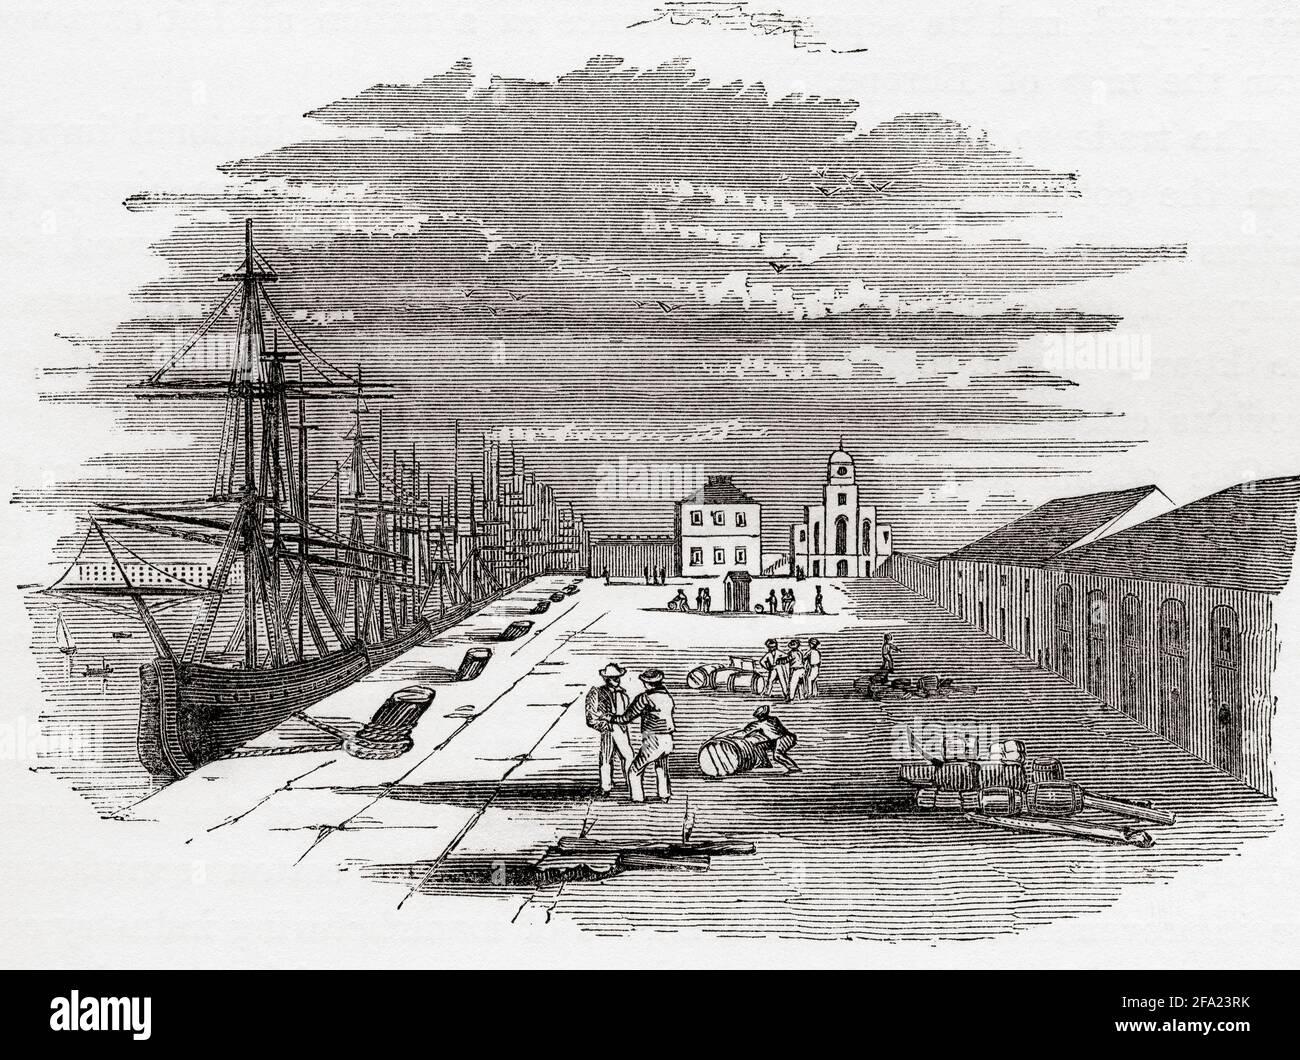 L'East India Import Dock, Blackwall, Londra, Inghilterra, visto qui all'inizio del 19 ° secolo. Il molo di Import è stato costruito per fornire spazio per scaricare le Indie Orientali di ritorno dai loro viaggi. From the History of Progress in Great Britain, pubblicato nel 1866. Foto Stock